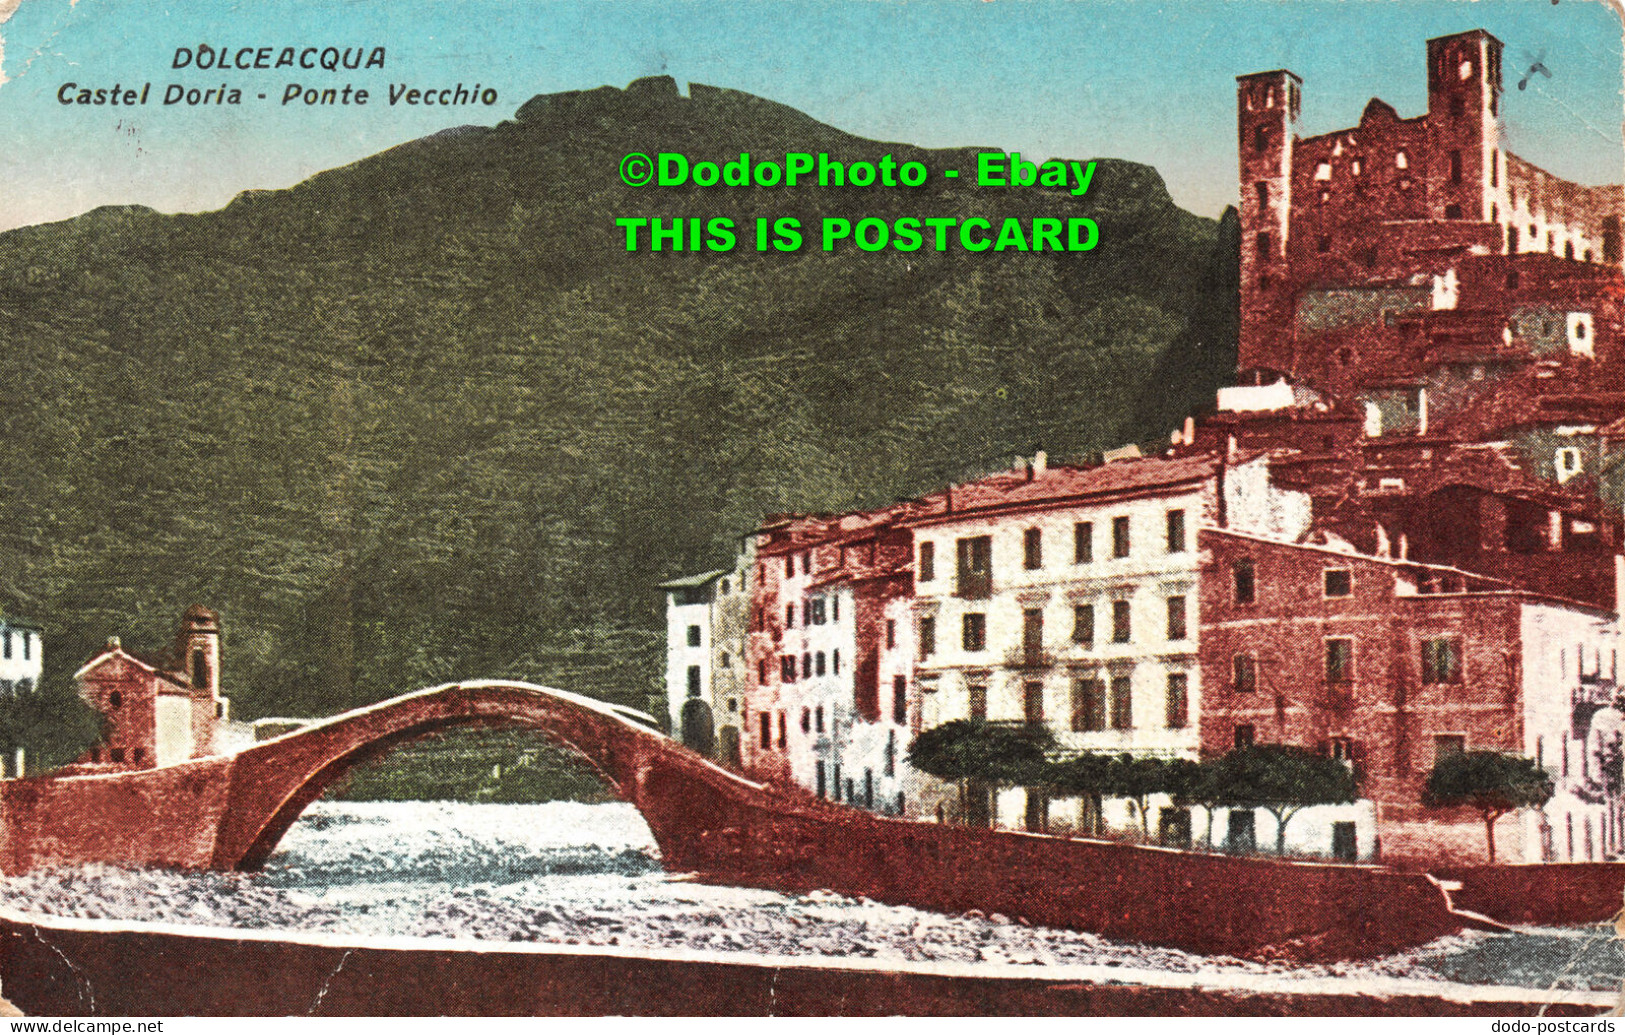 R422962 Dolceacqua. Castel Doria. Ponte Vecchio. D. Giacometti - World